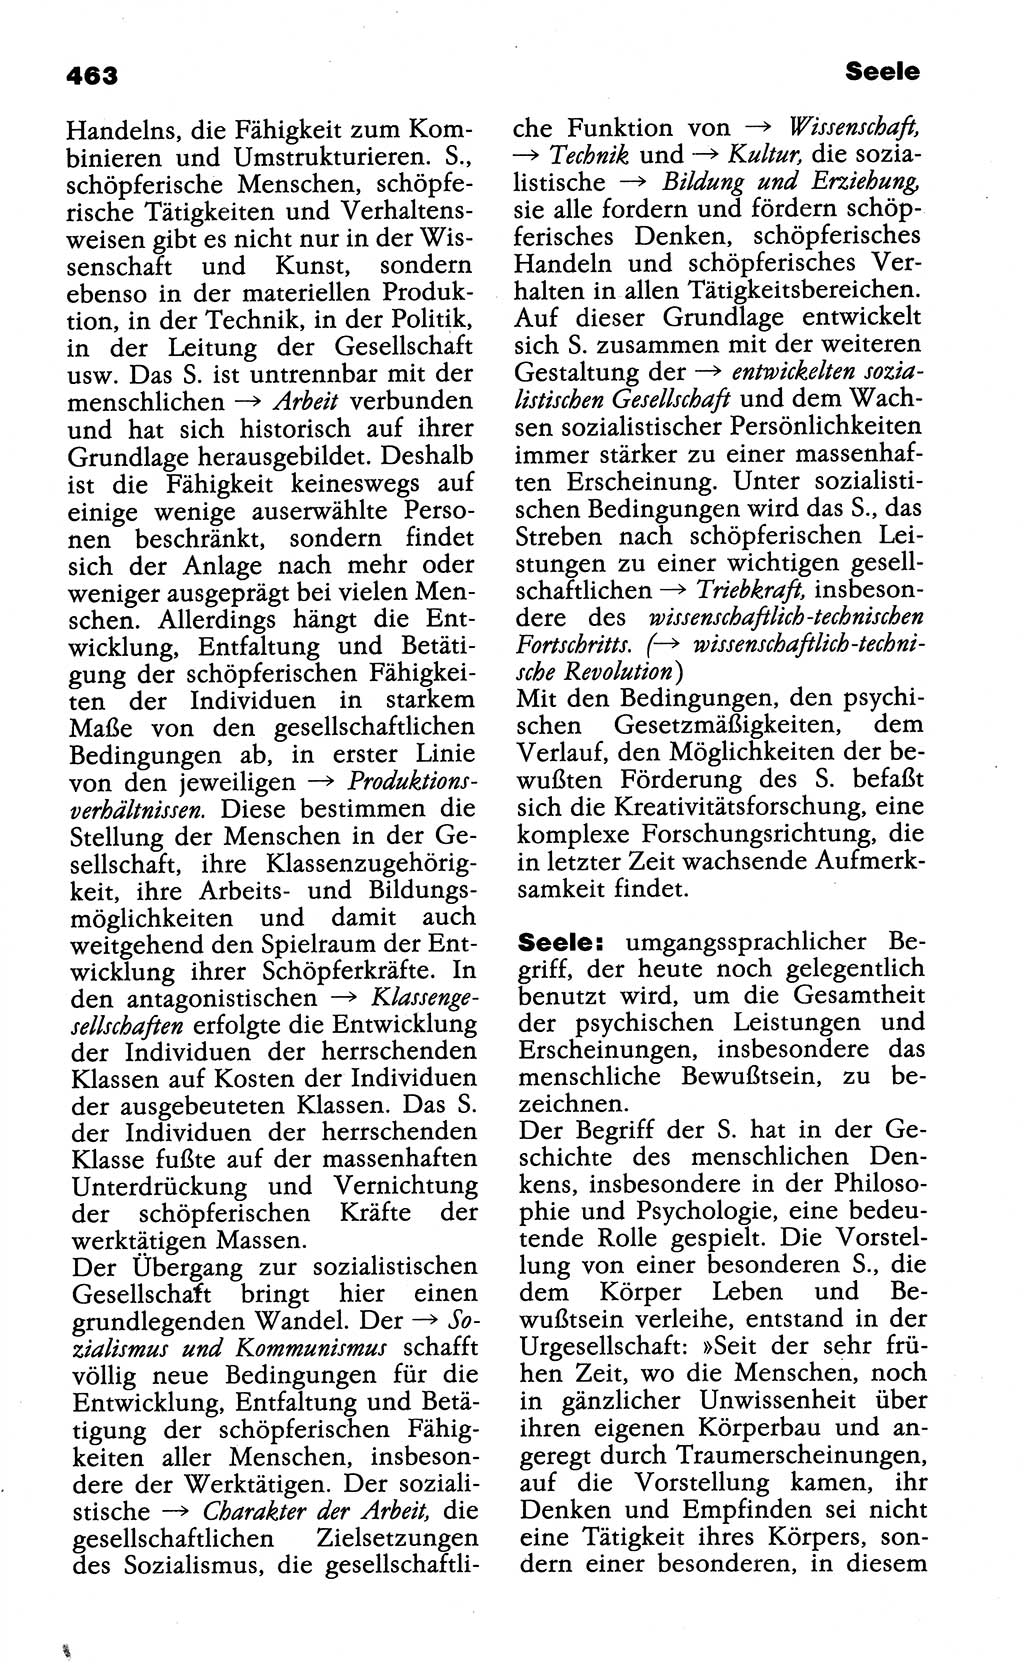 Wörterbuch der marxistisch-leninistischen Philosophie [Deutsche Demokratische Republik (DDR)] 1985, Seite 463 (Wb. ML Phil. DDR 1985, S. 463)